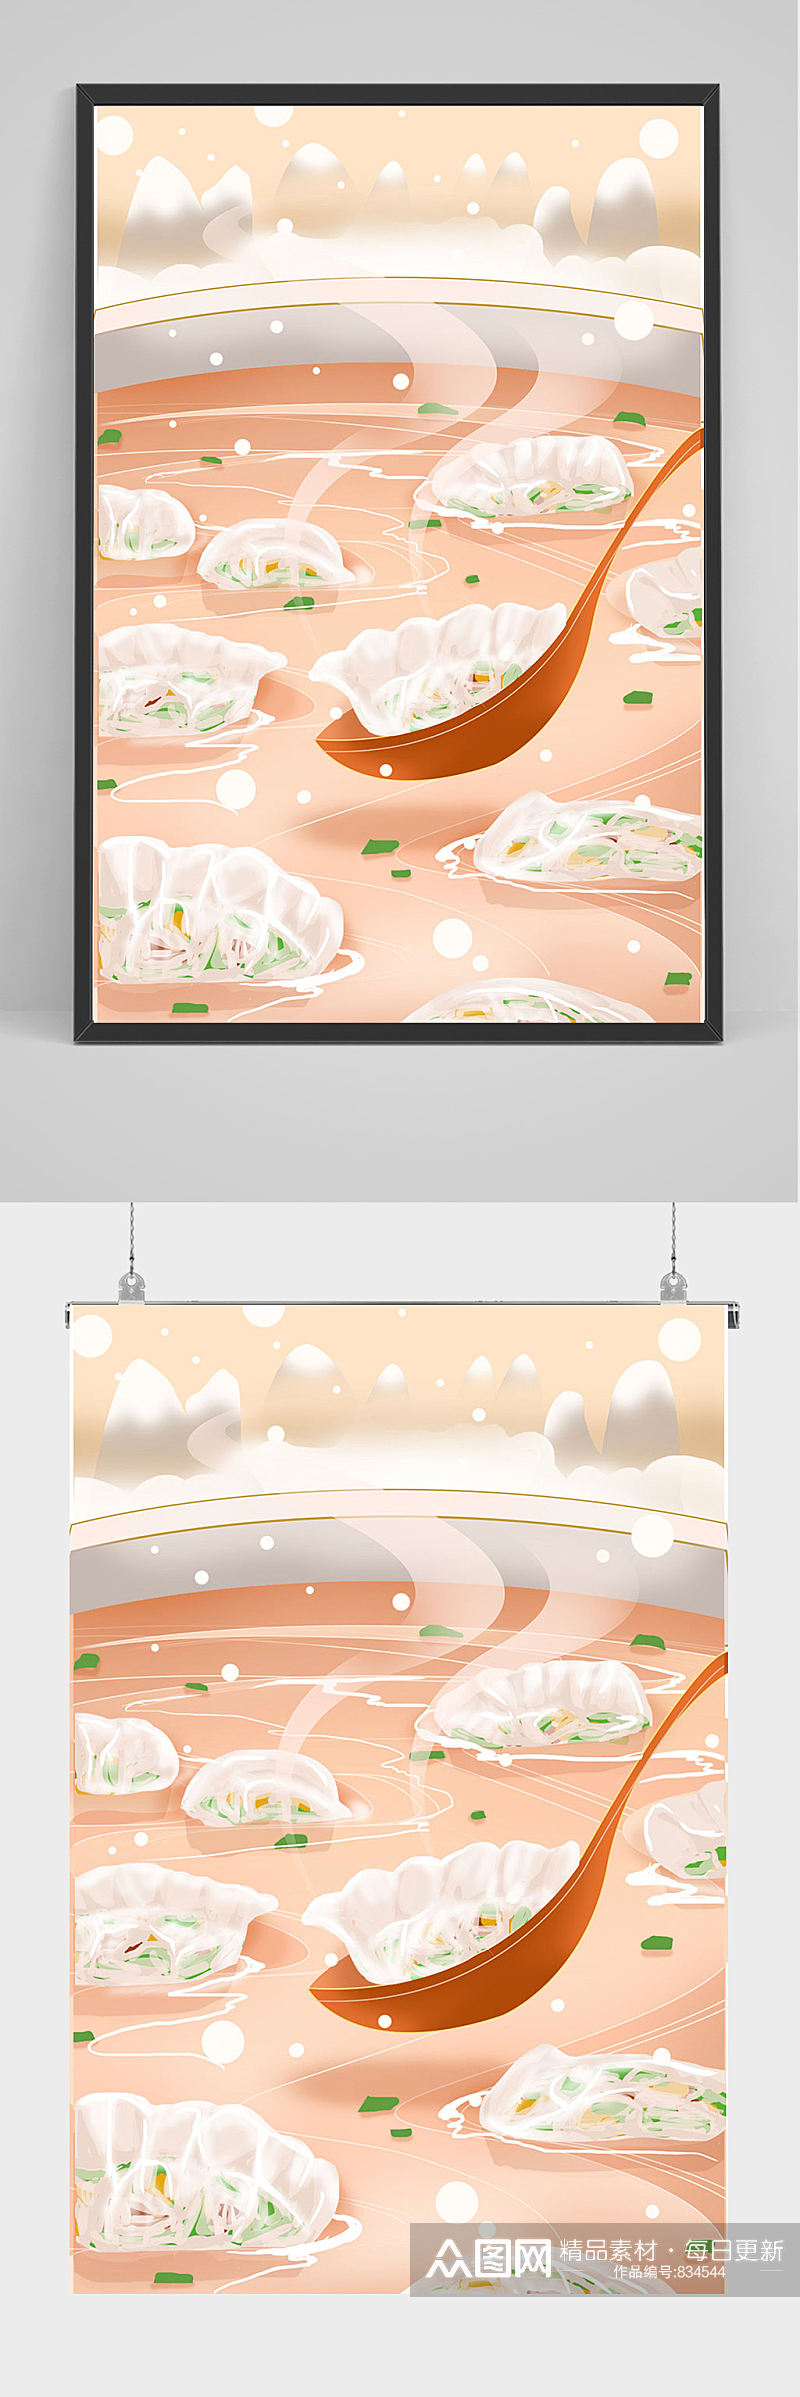 冬至美味水饺插画设计素材